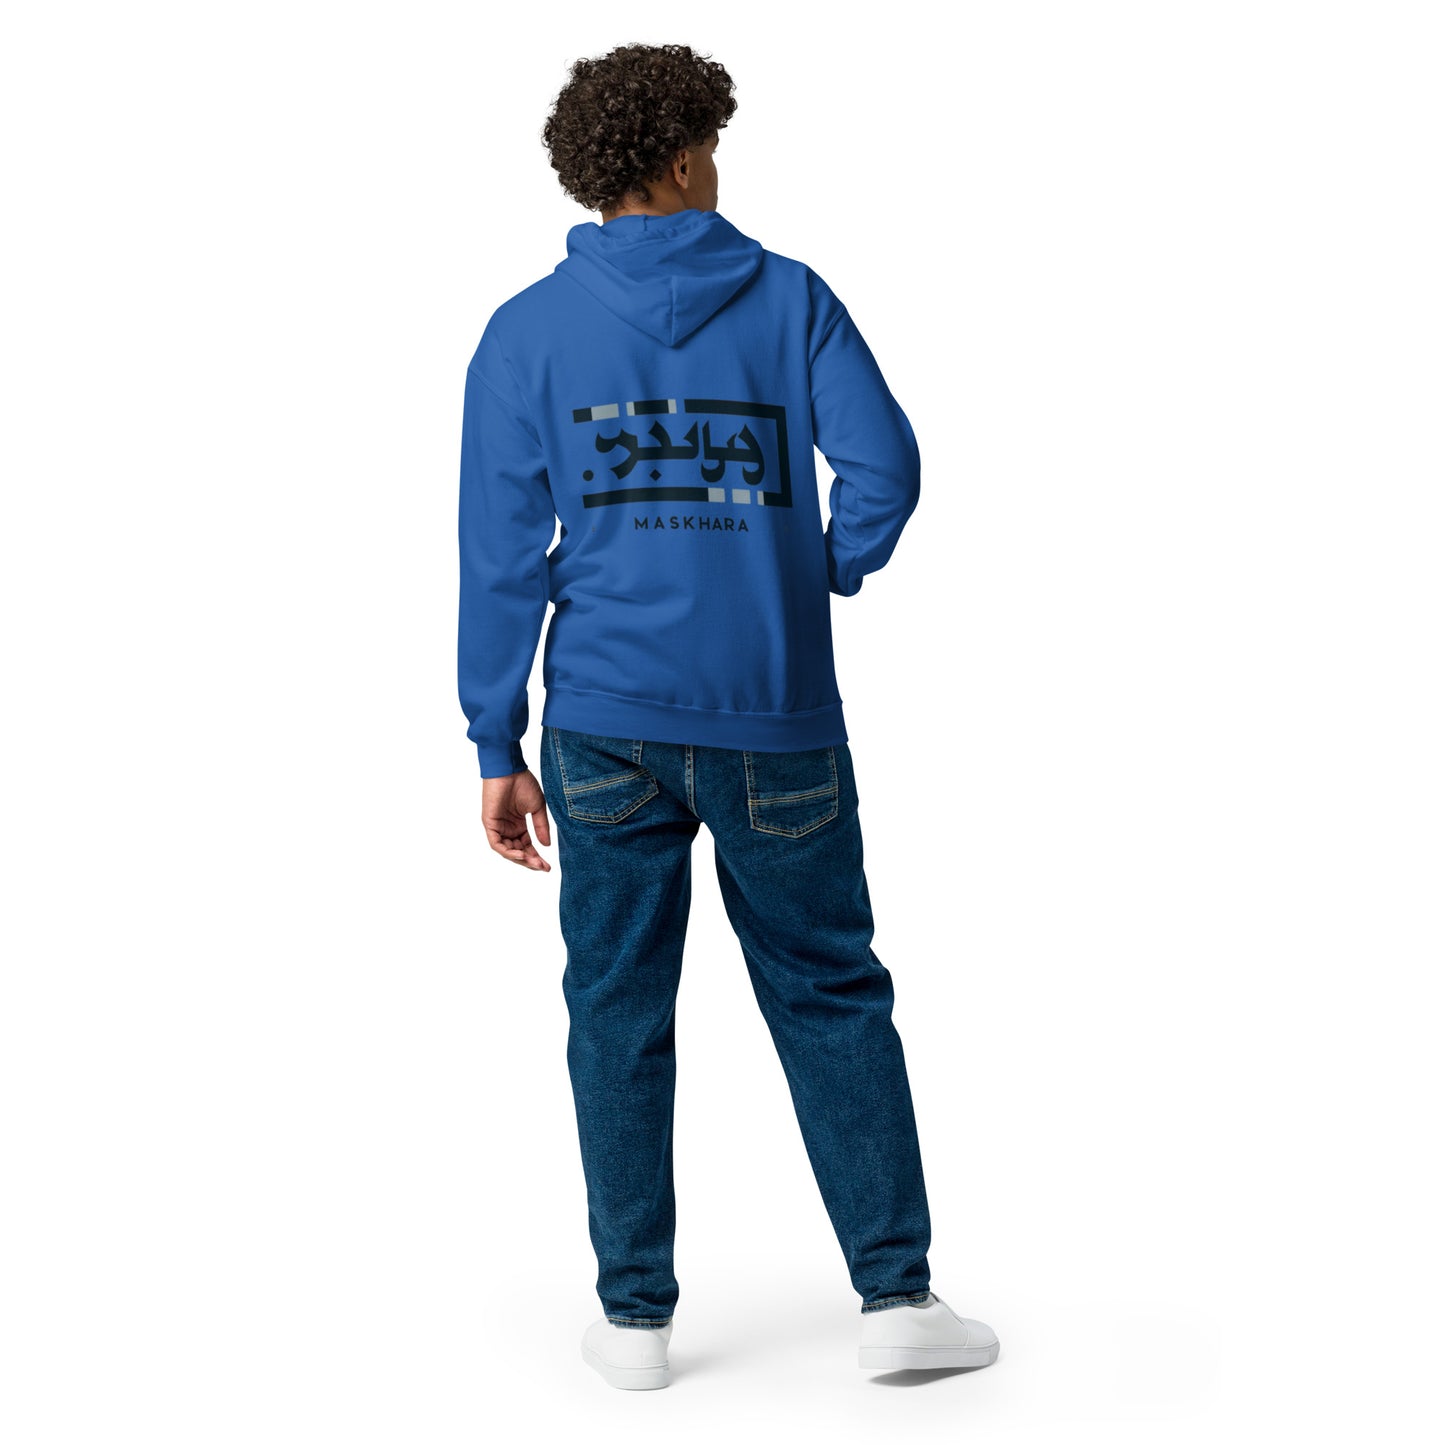 TE016.3 - Unisex Heavy-Blend Zip Hoodie - Social Media Trend - Maskhara 1 - blue logo